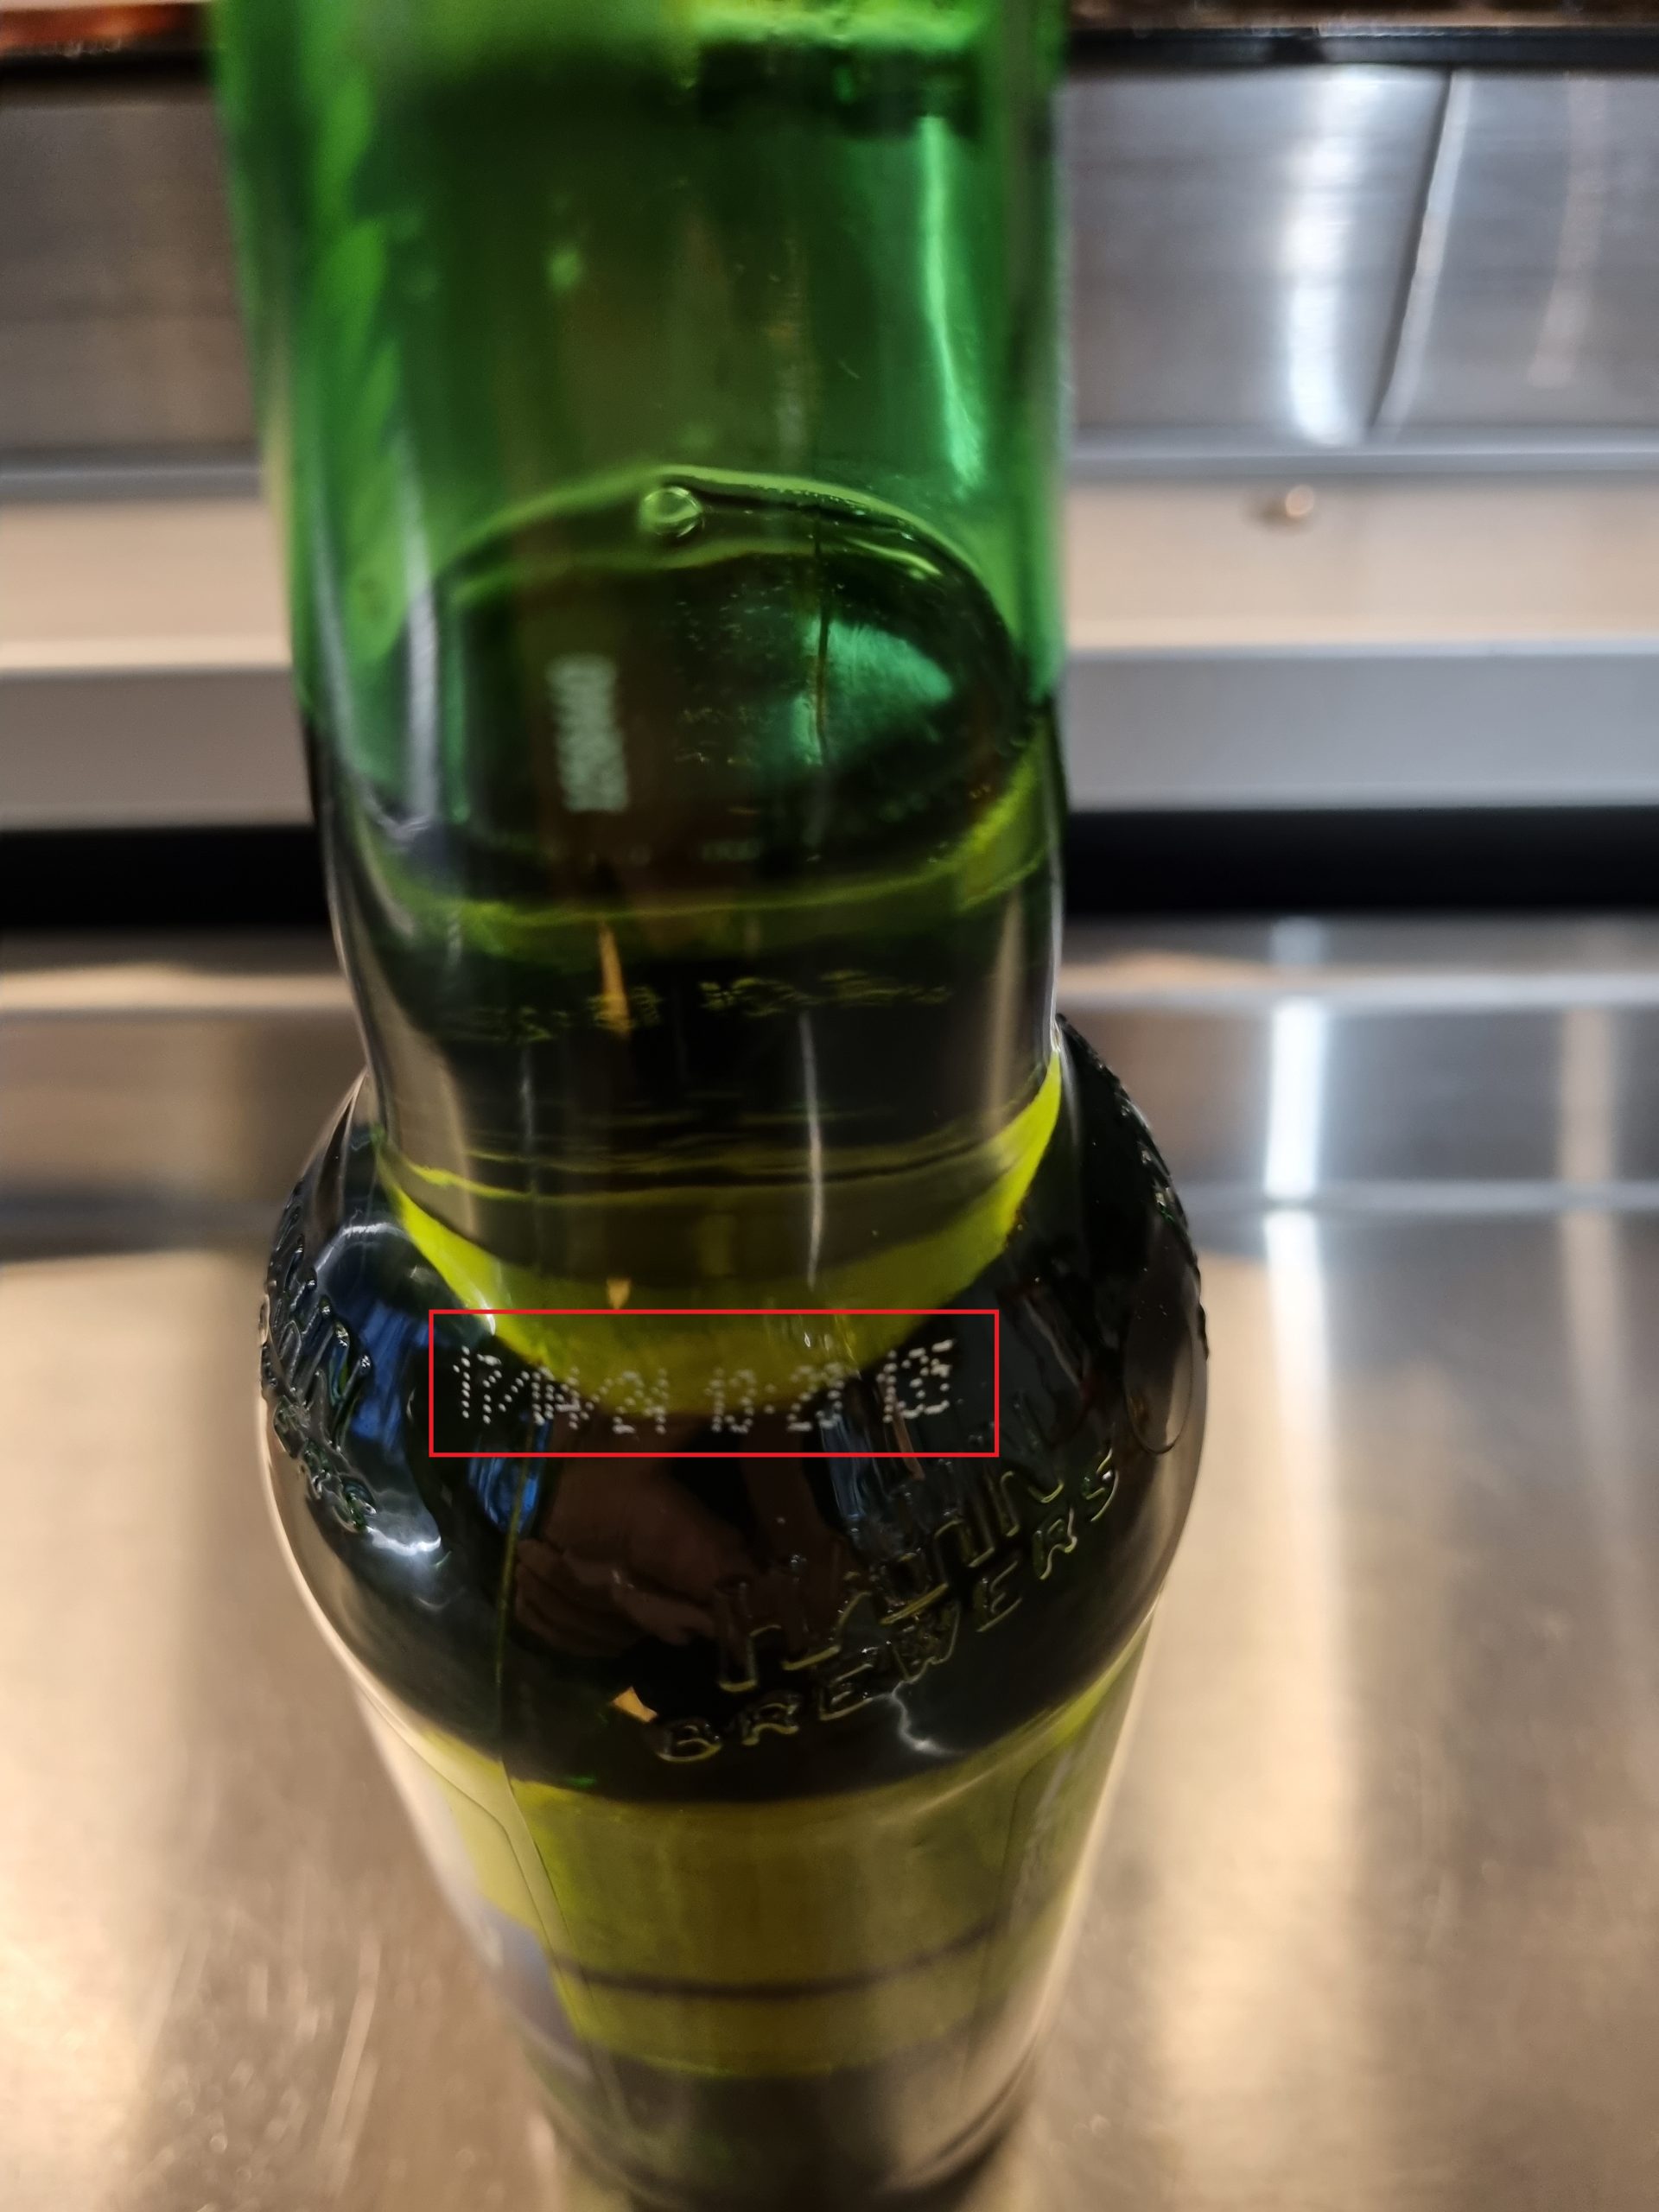 Side of bottle